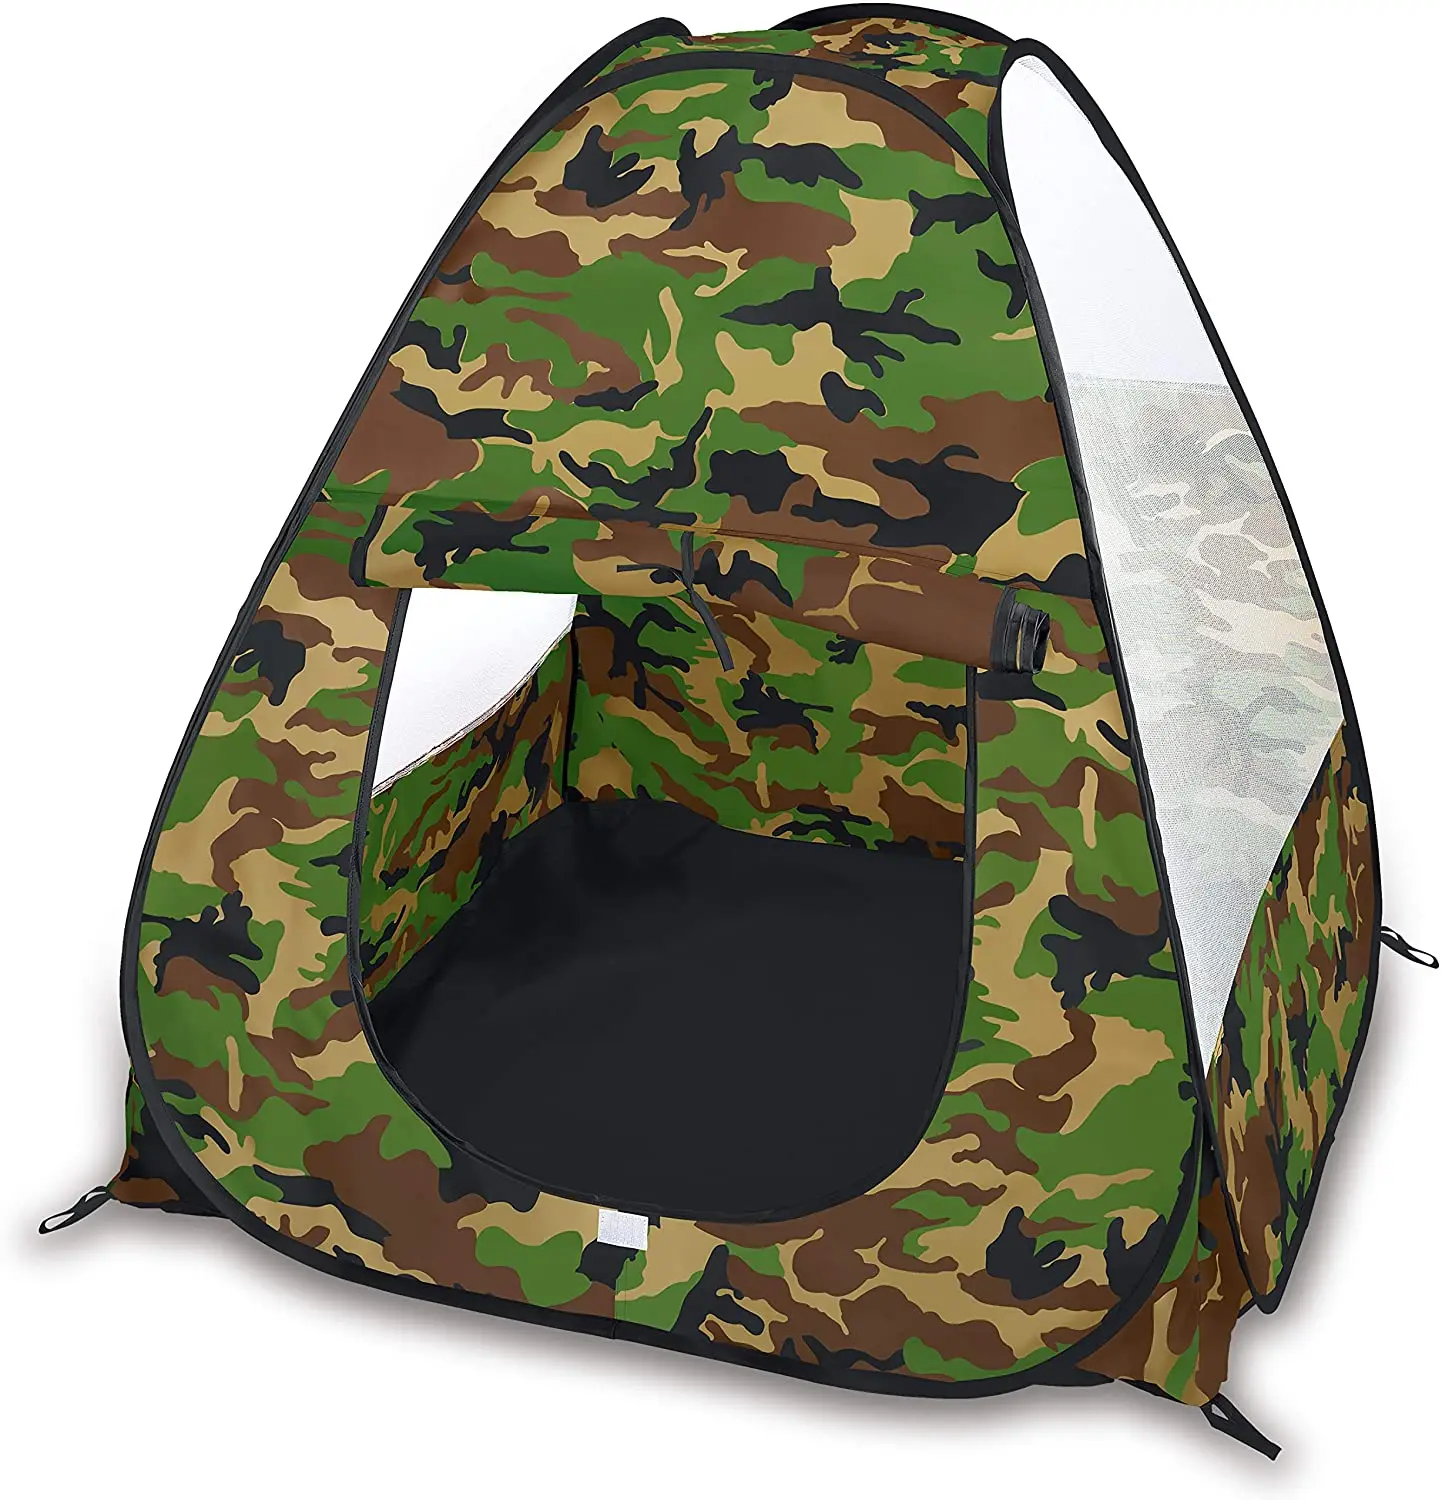 dilemma bevind zich op gang brengen Camouflage Pop Up Play Tent - Collapsible Indoor/outdoor Playhouse For Kids  - Buy Camouflage Pop Up Play Tent,Kids Play Tents,Kids Pop Up Play Tent  Product on Alibaba.com